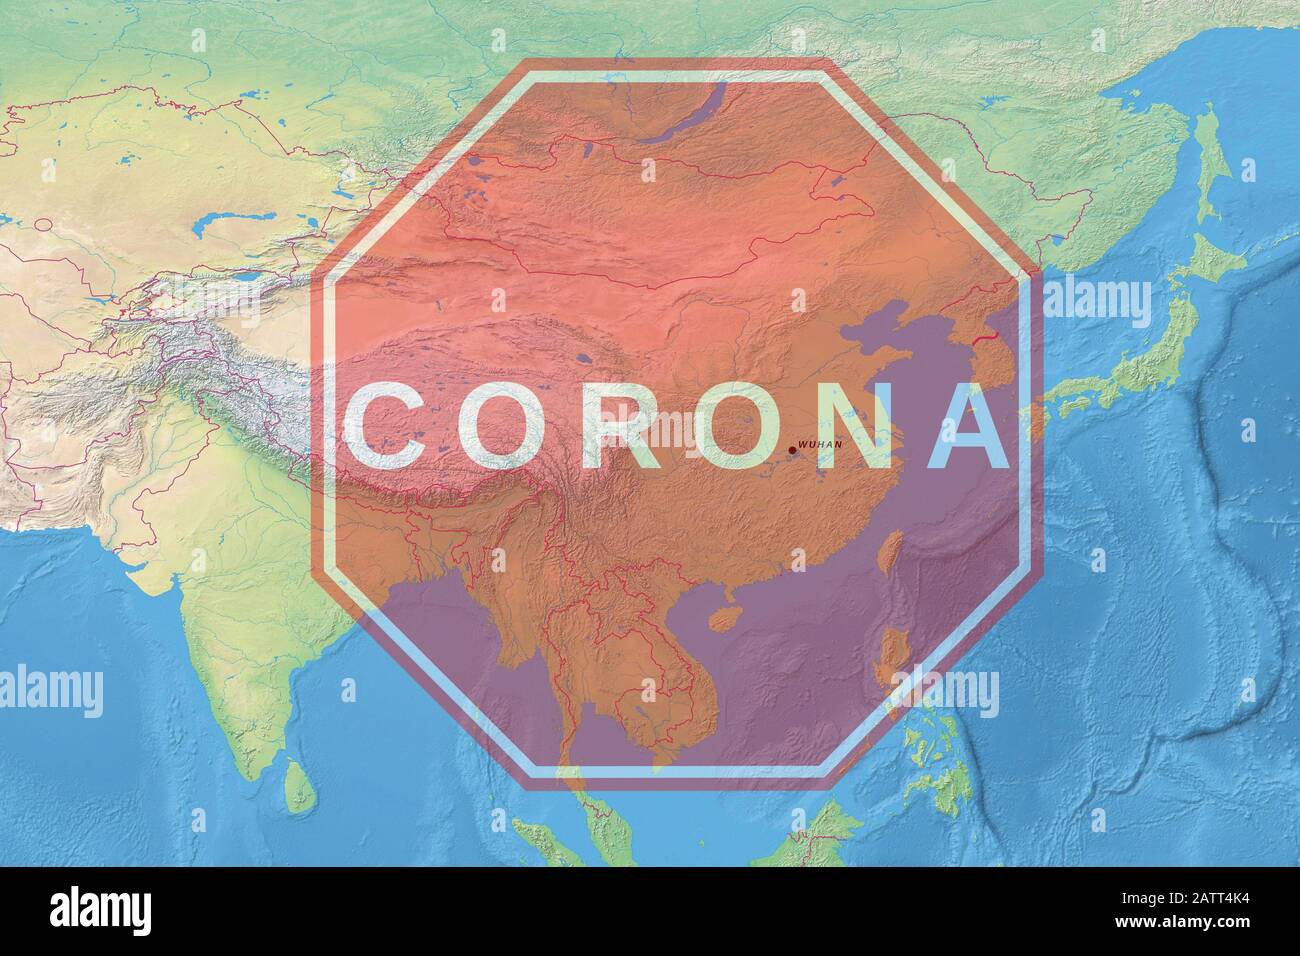 Zeichen Vorsicht Coronavirus - Physische Karte von China mit Wuhan-Stadt in der Provinz Hubri mit Stoppsymbol des Corona-Virus. Pandemic Medical Concept Stockfoto